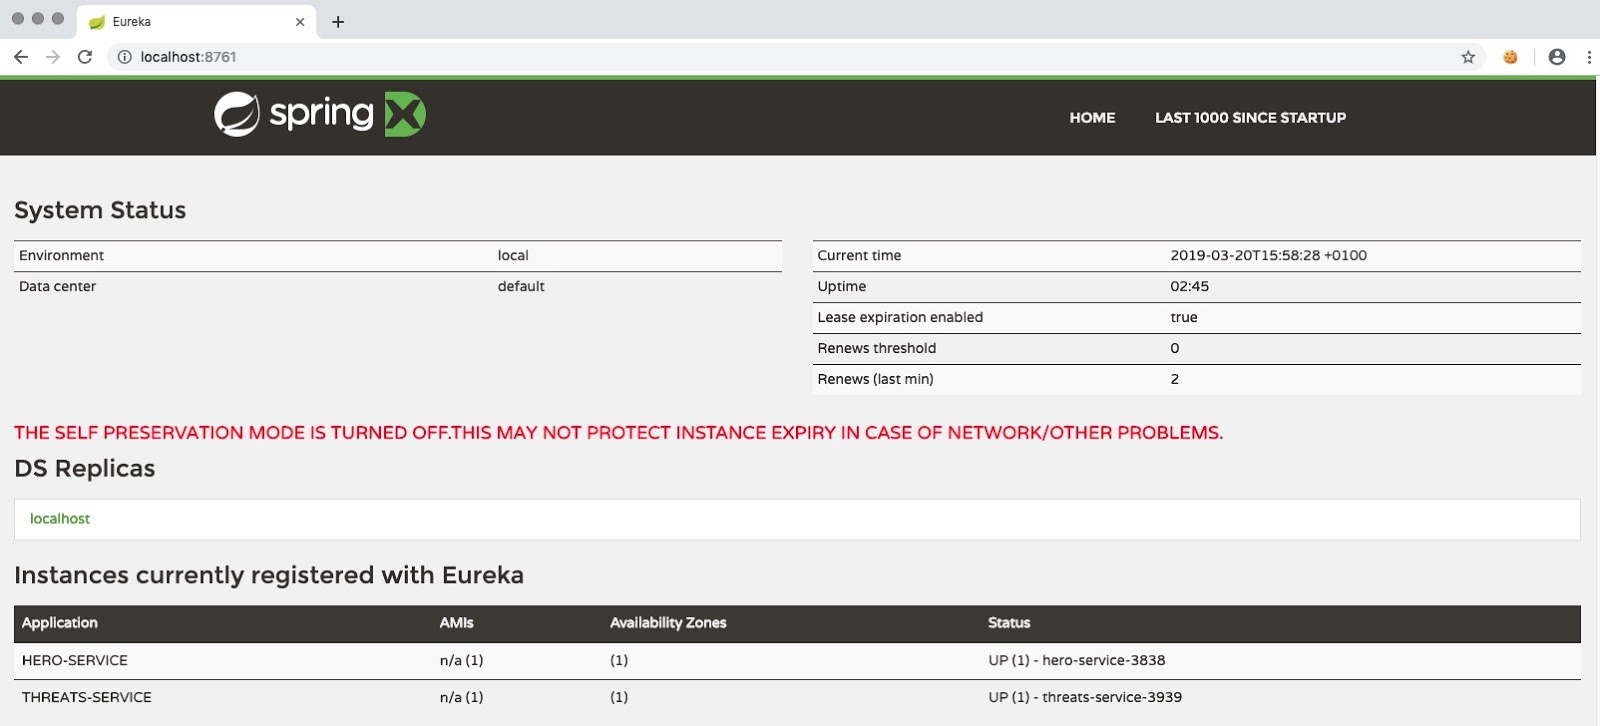 Eureka services instances registered